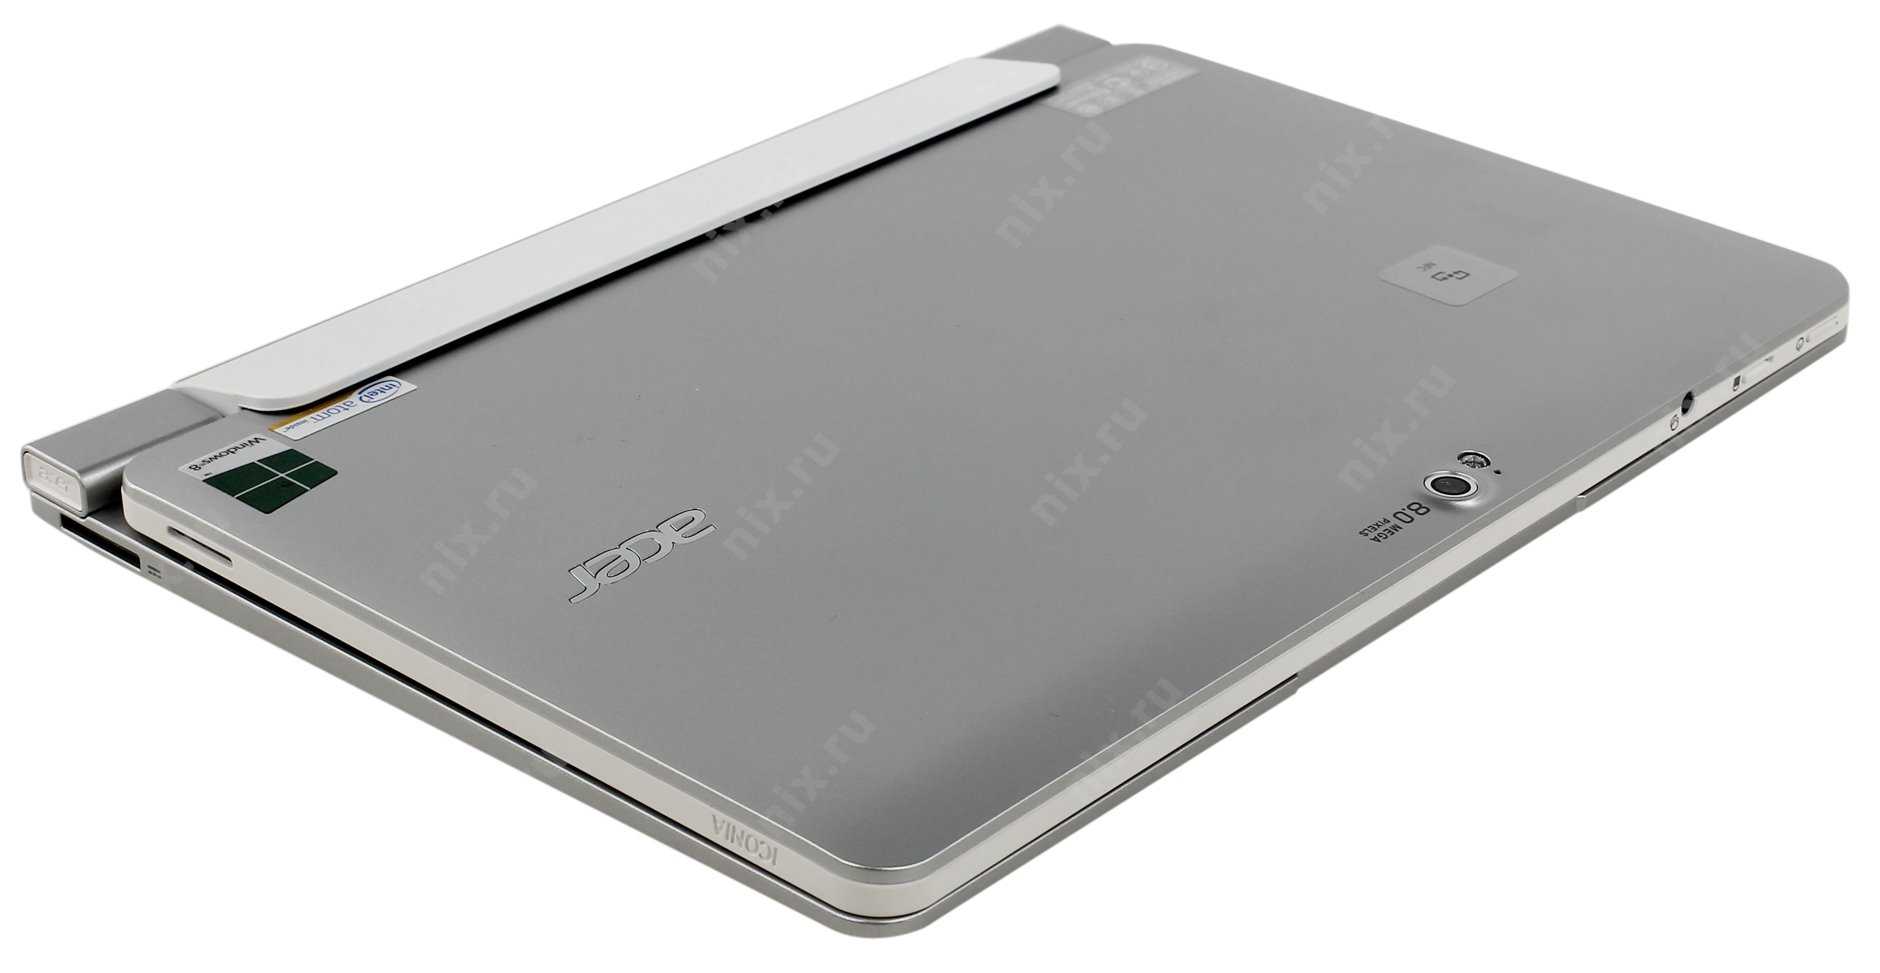 Acer iconia tab w510 32gb dock (серебристый) - купить , скидки, цена, отзывы, обзор, характеристики - планшеты